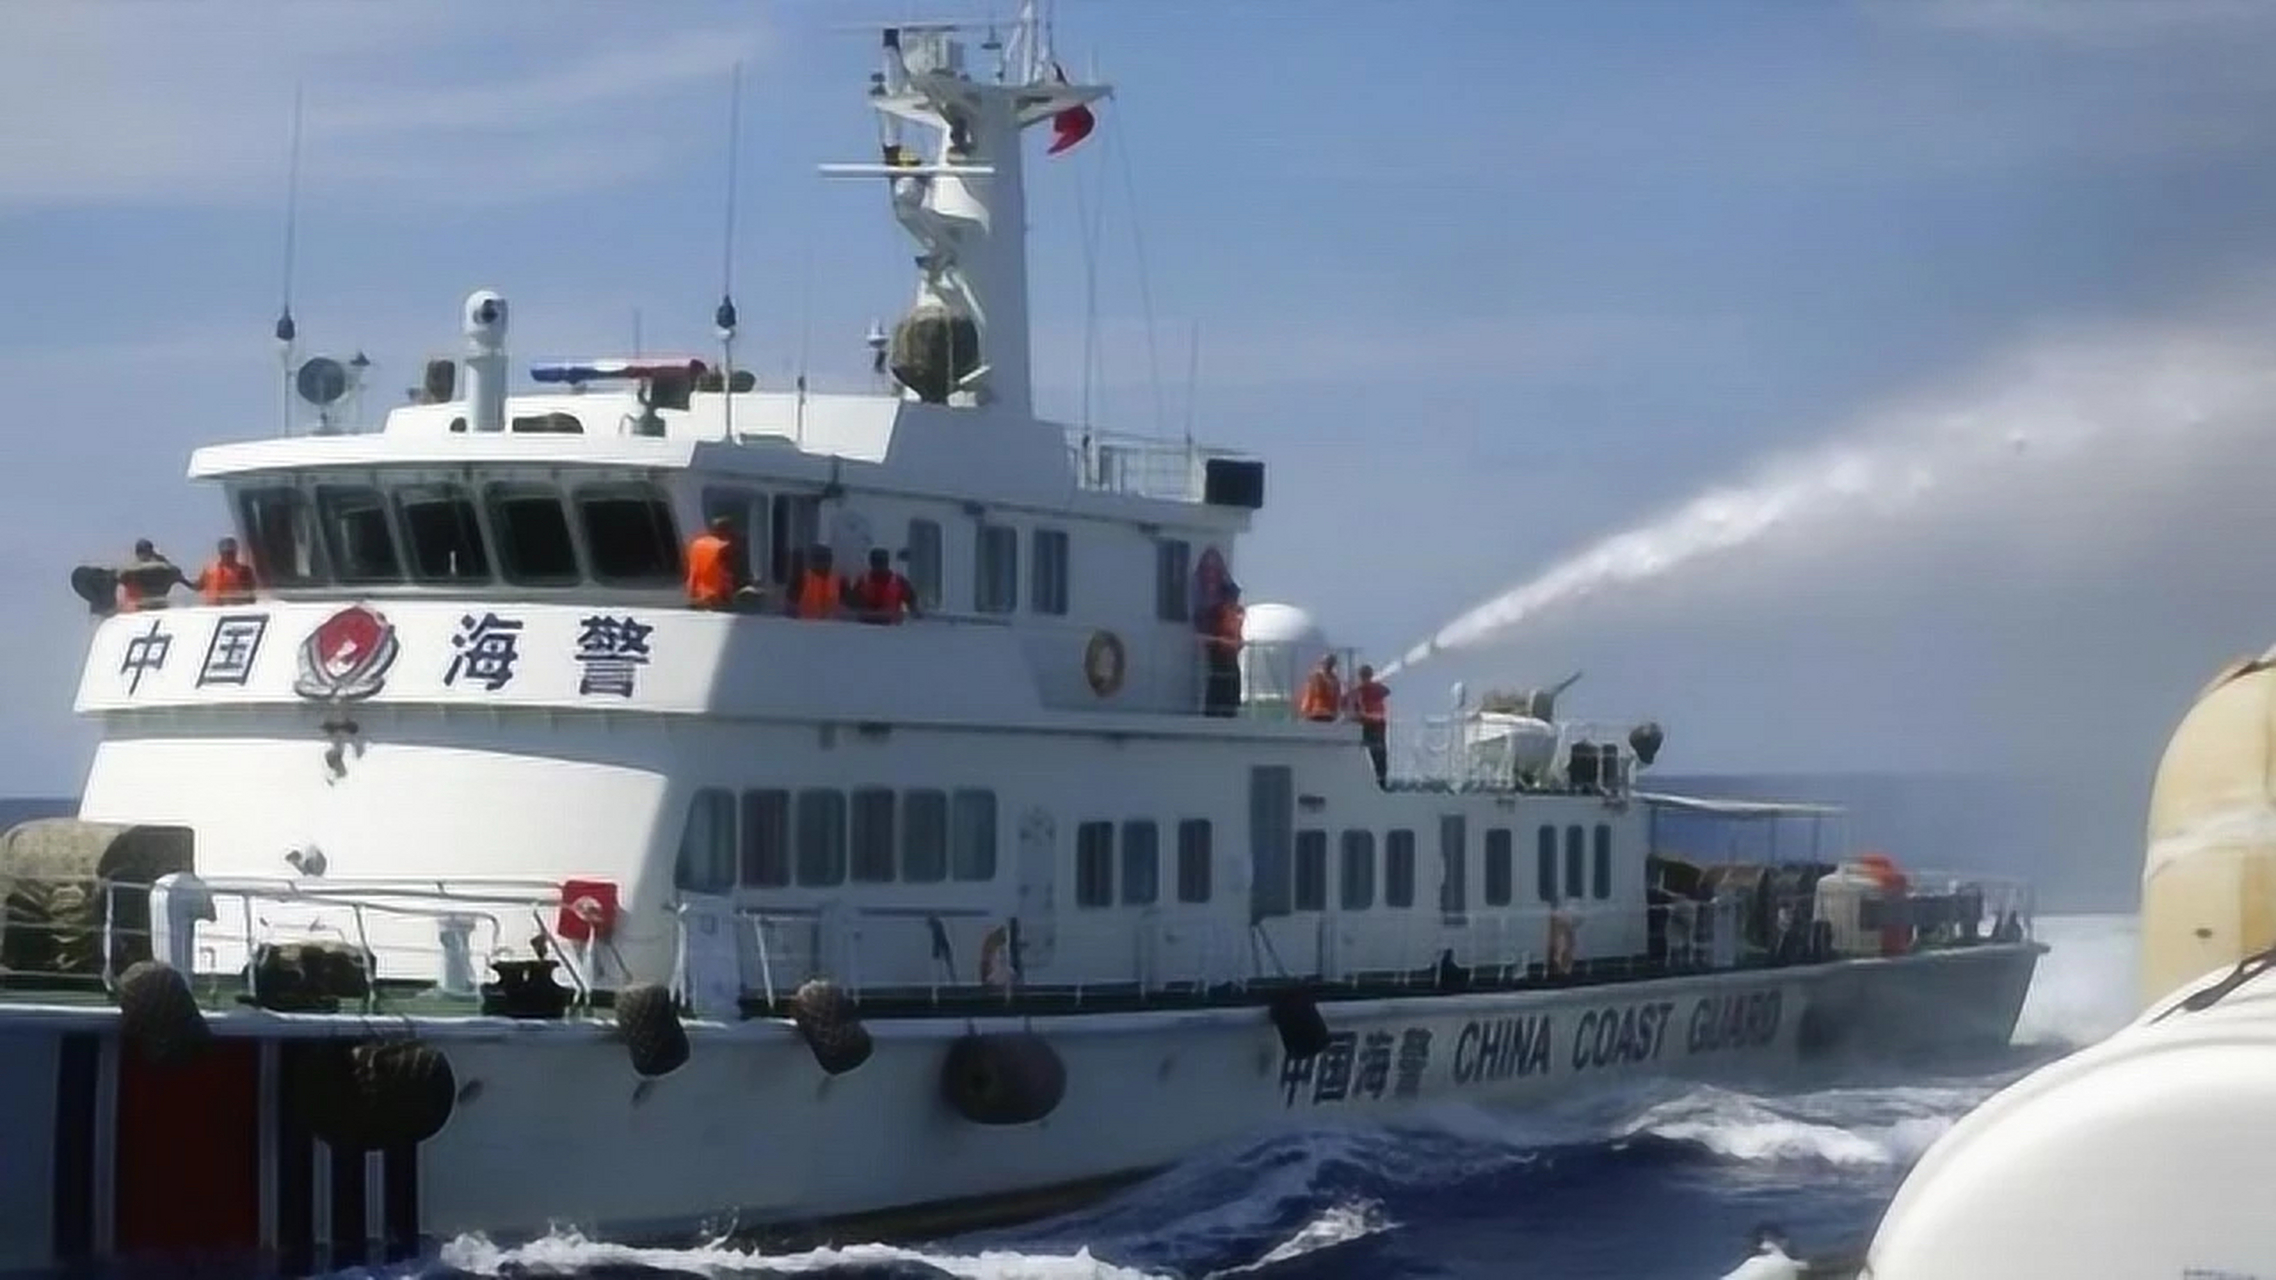 菲律宾海岸警卫队和武装部队发布声明称,中国海警在南沙仁爱礁海域对